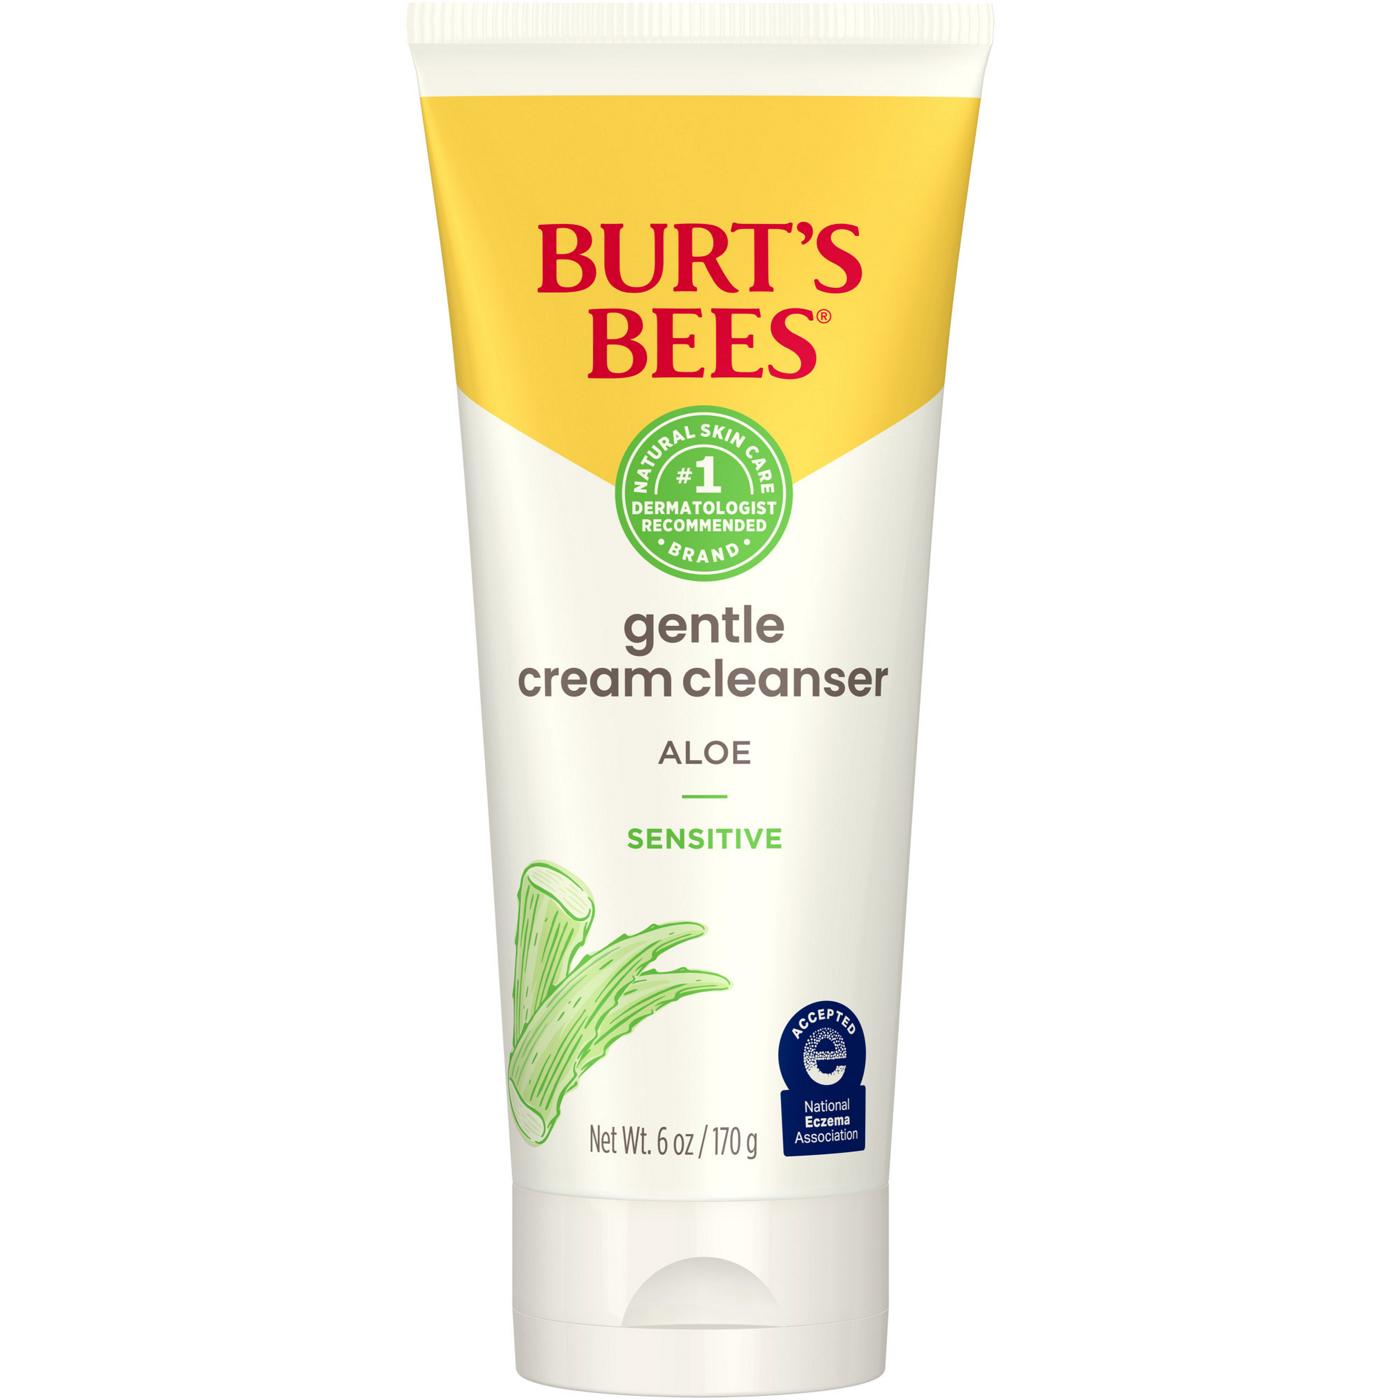 Burt's Bees Sensitive Gentle Cream Cleanser; image 1 of 5